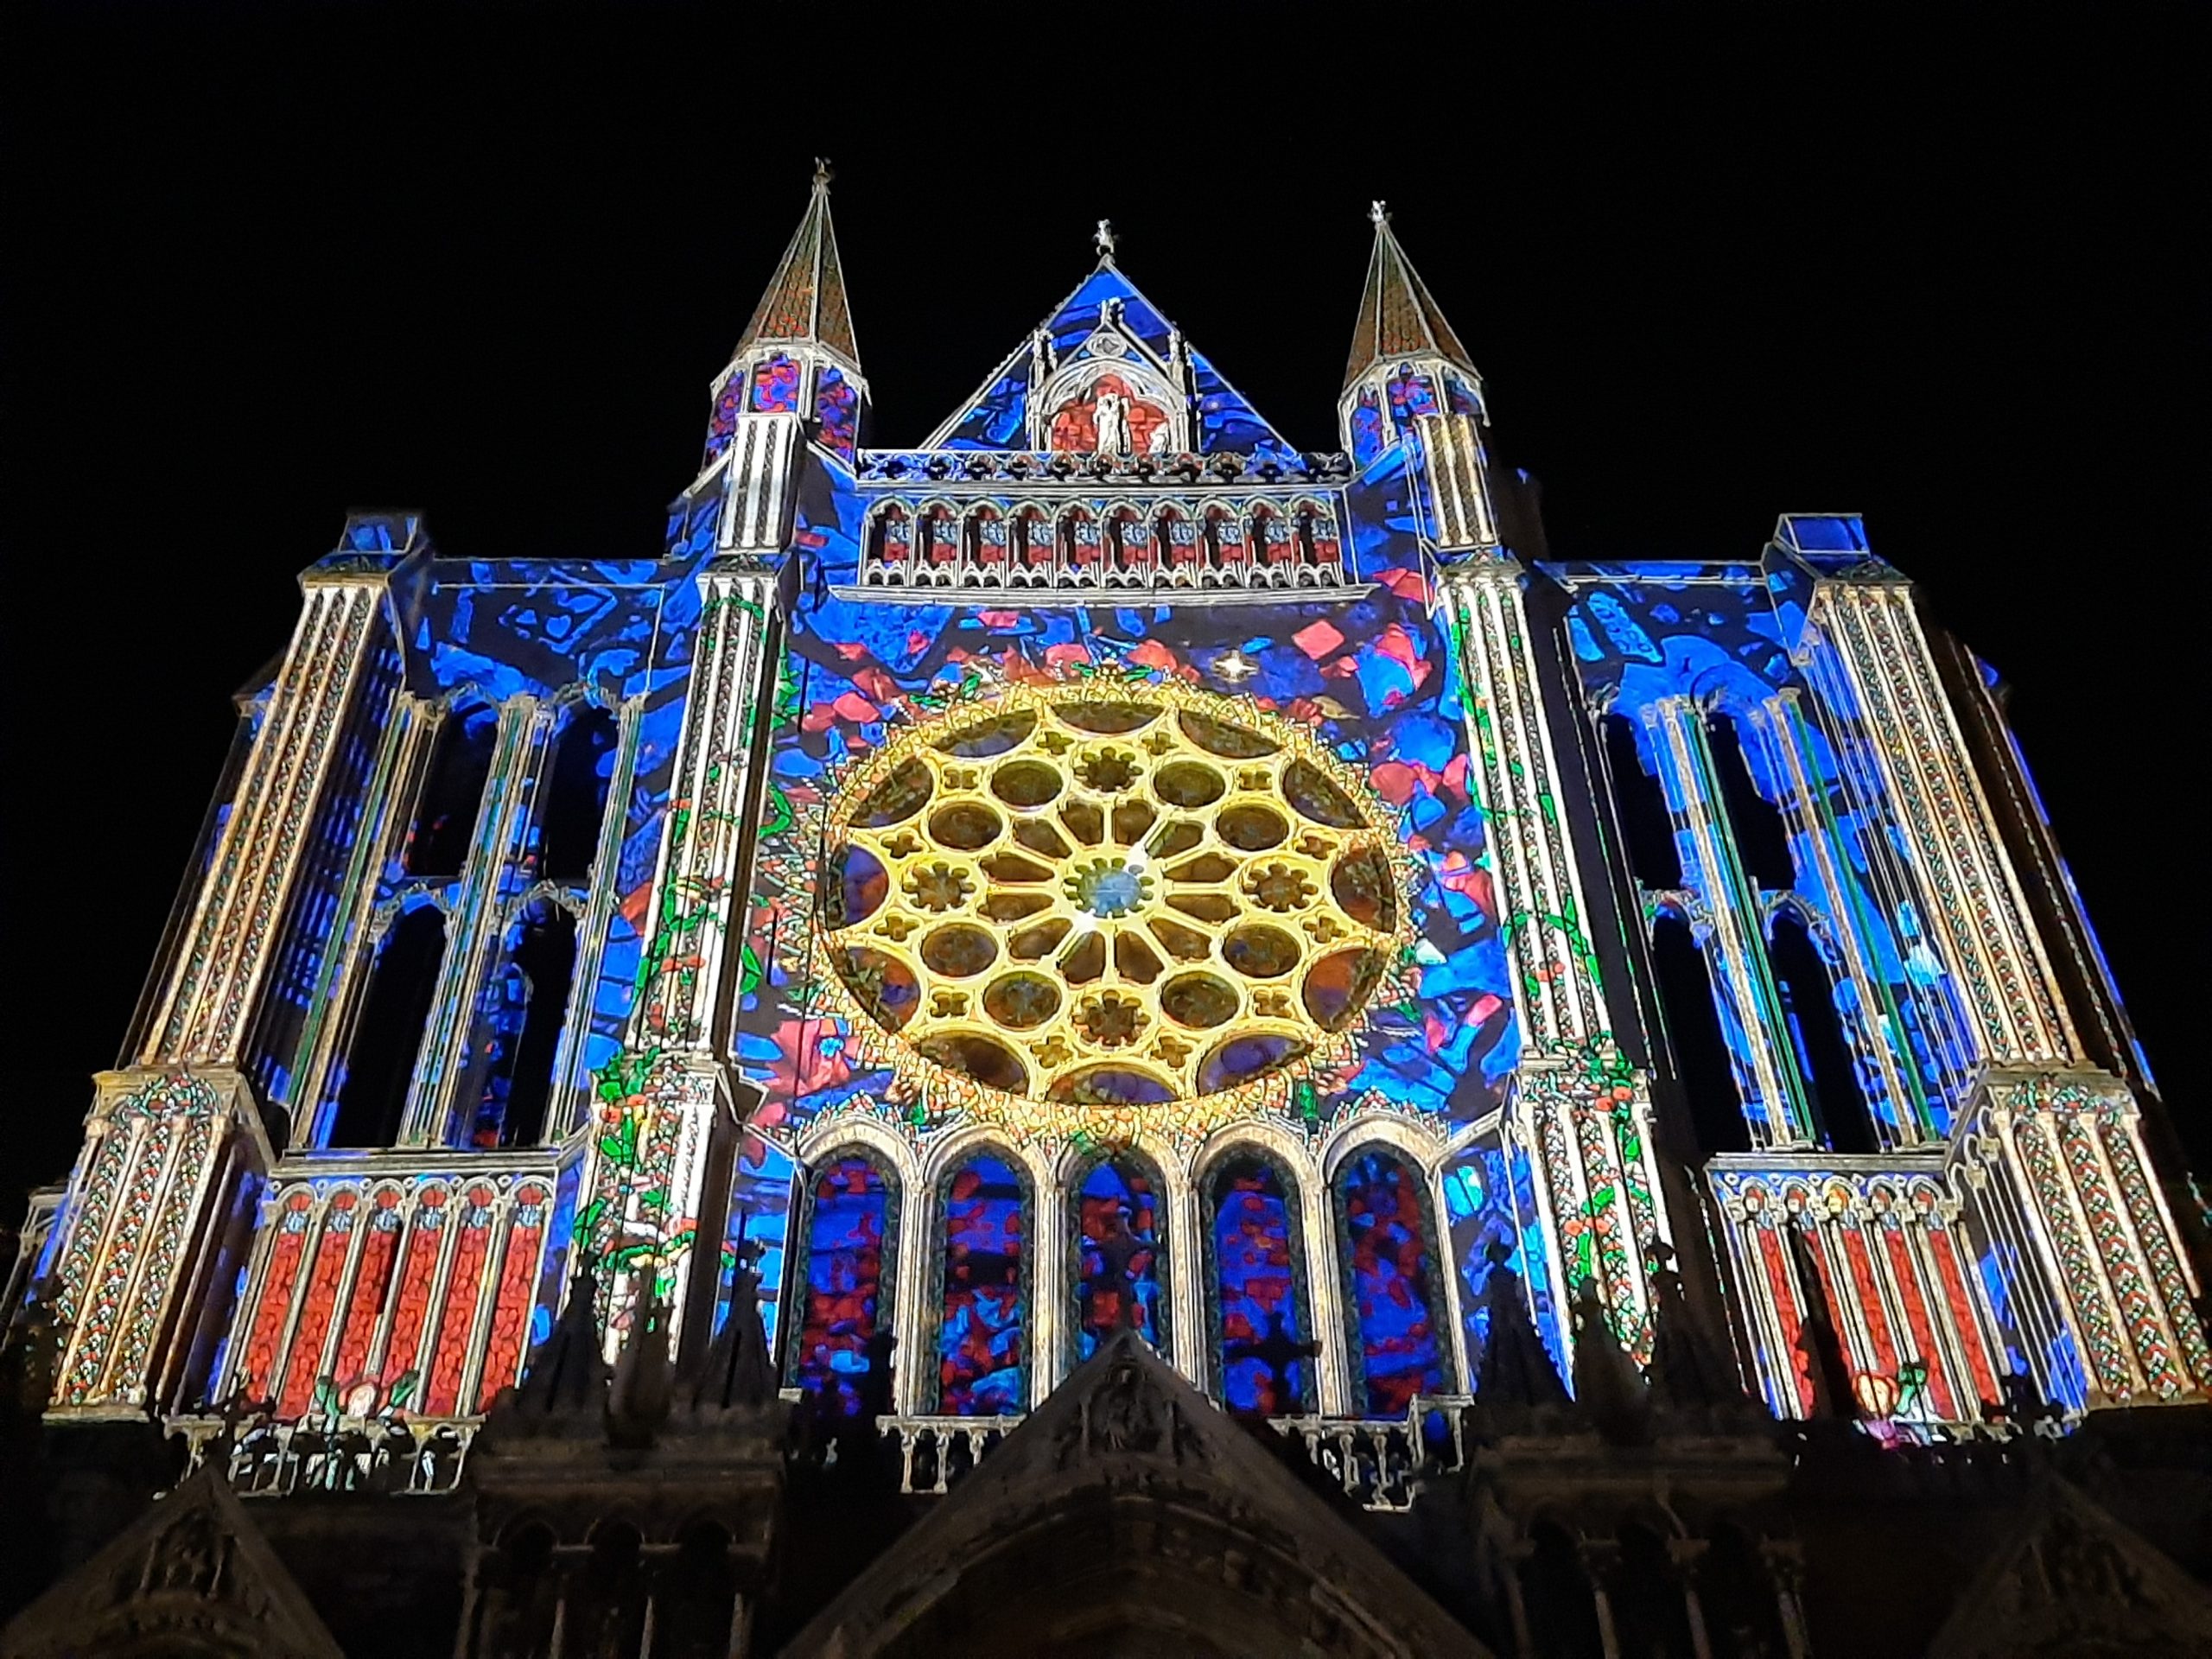 Bild: Lichtinstallation auf der Kathedrale in Chartres